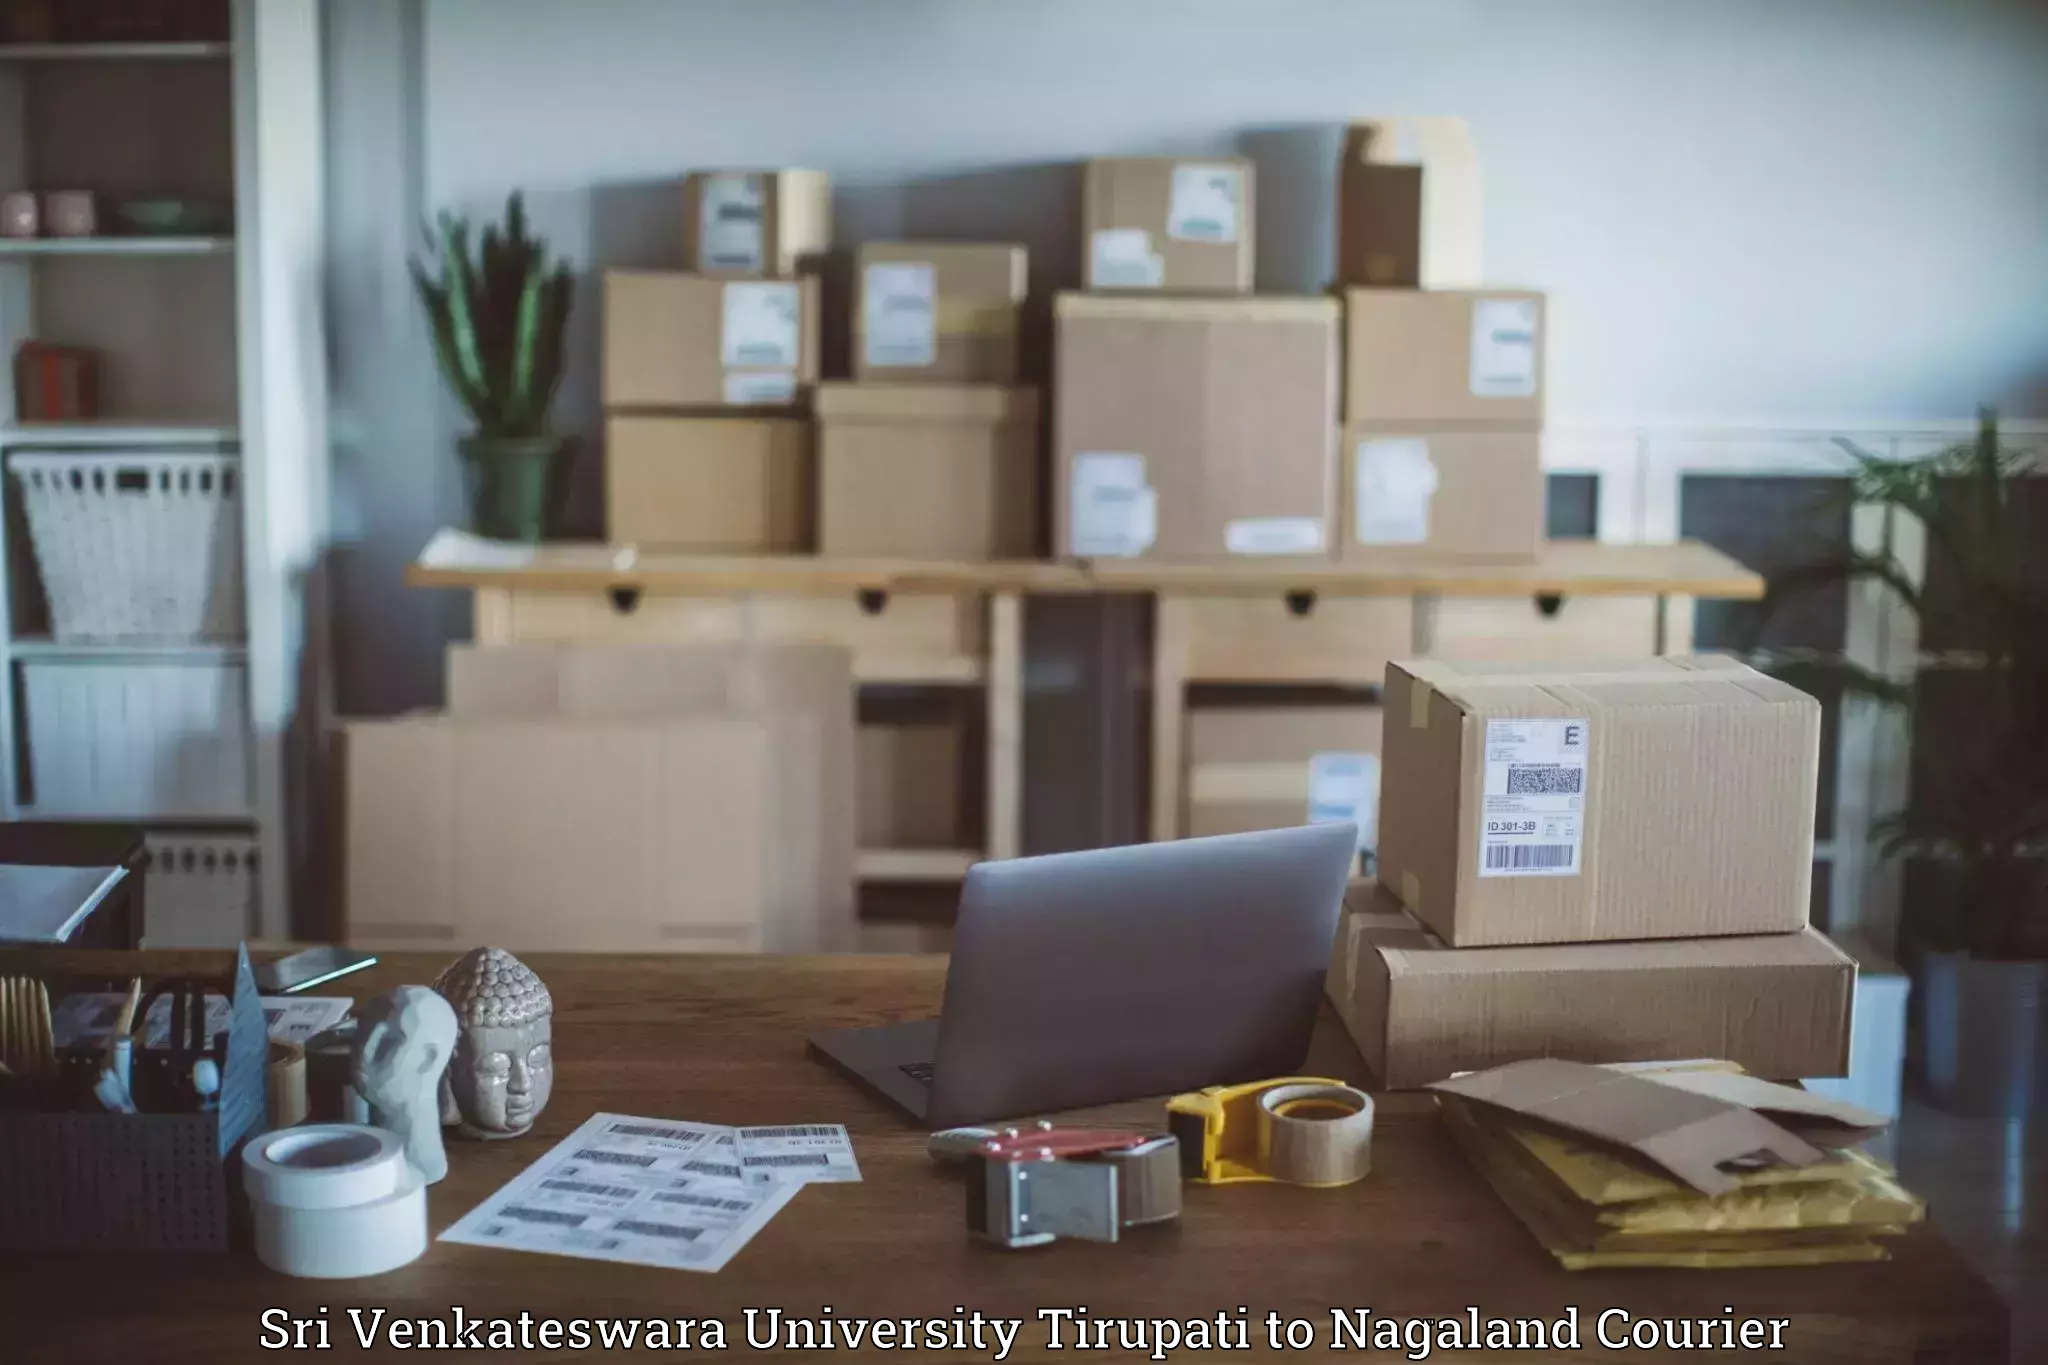 State-of-the-art courier technology Sri Venkateswara University Tirupati to Wokha